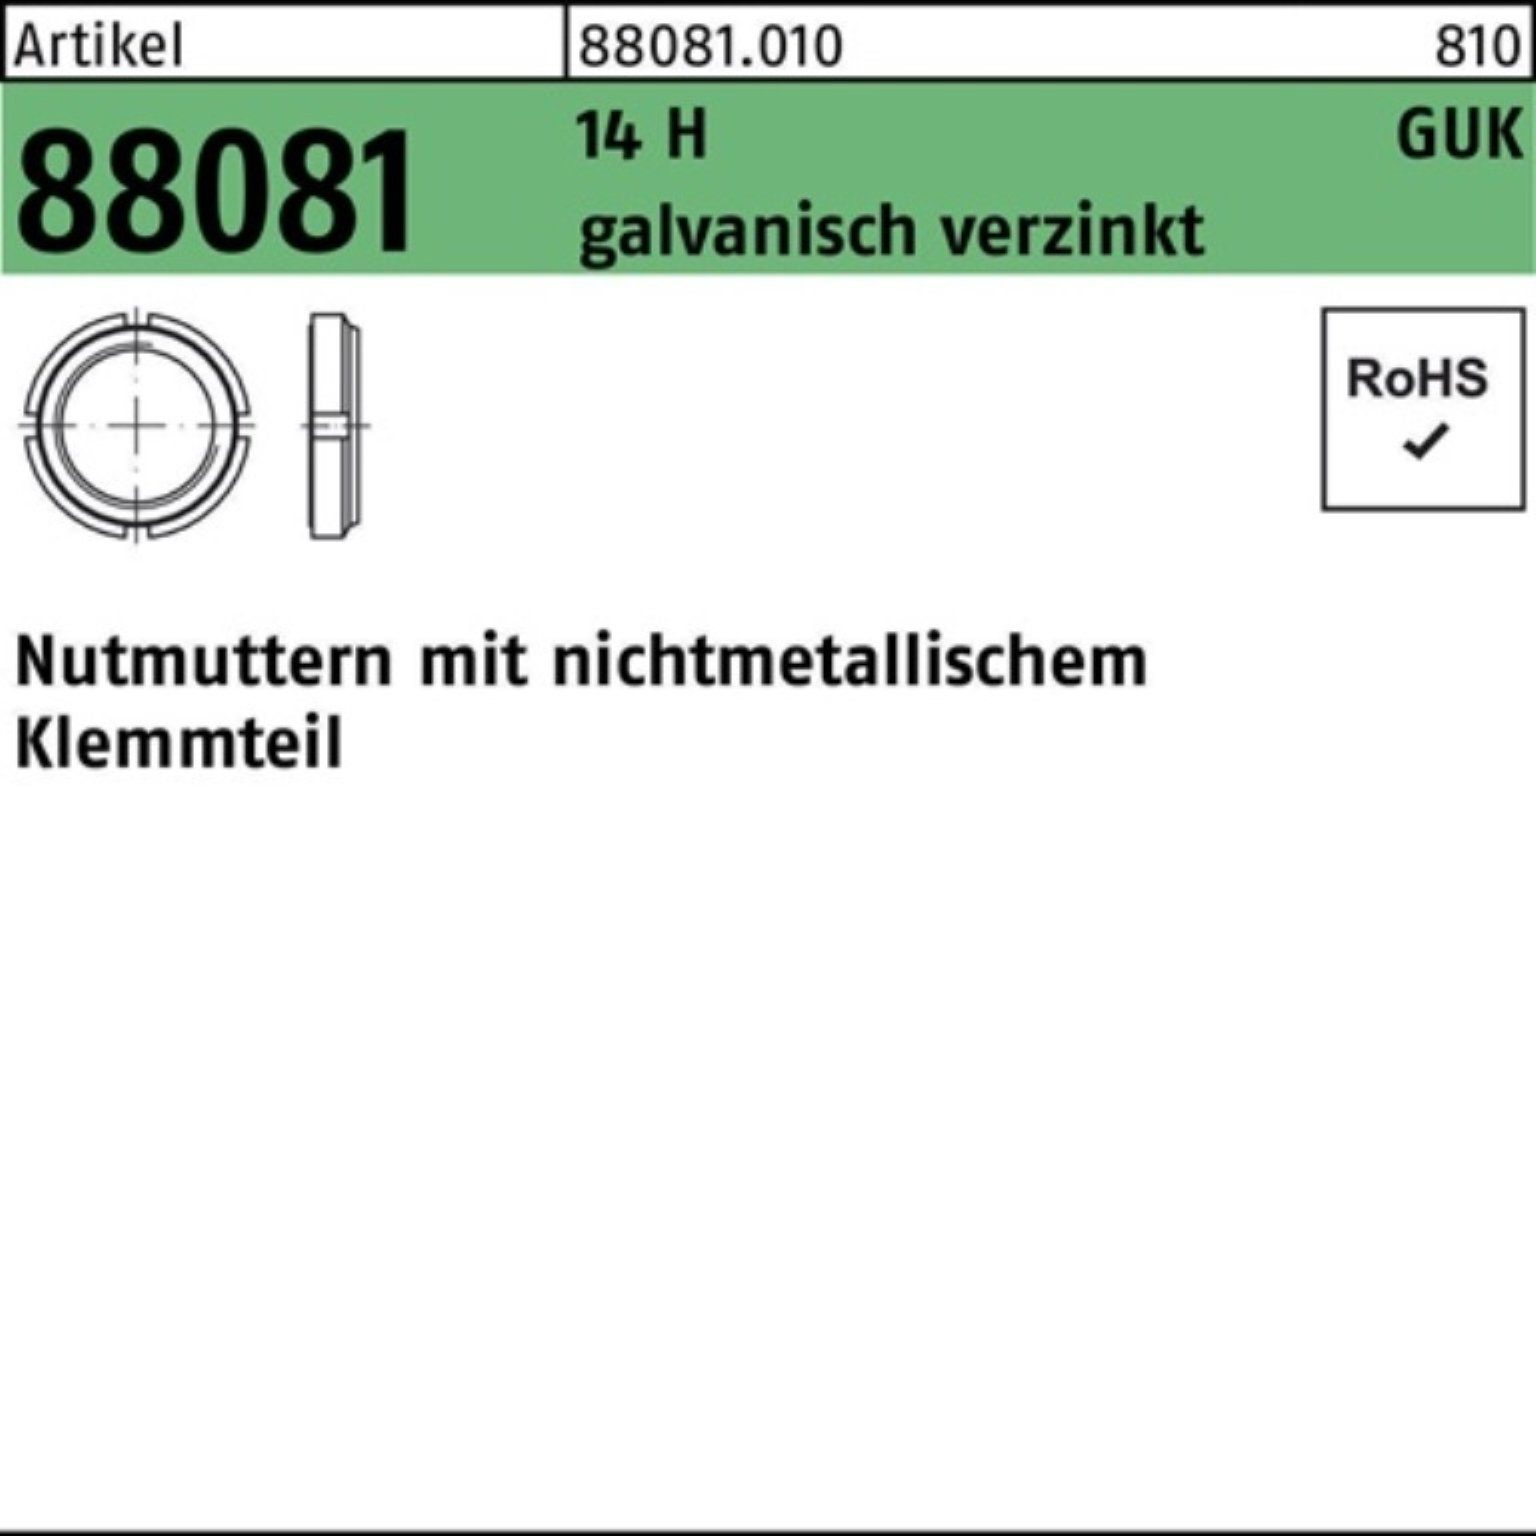 Reyher Nutmutter 100er Pack Nutmutter R 88081 Klemmteil GUK 9/M 45x1,5 14 H galv.verz.